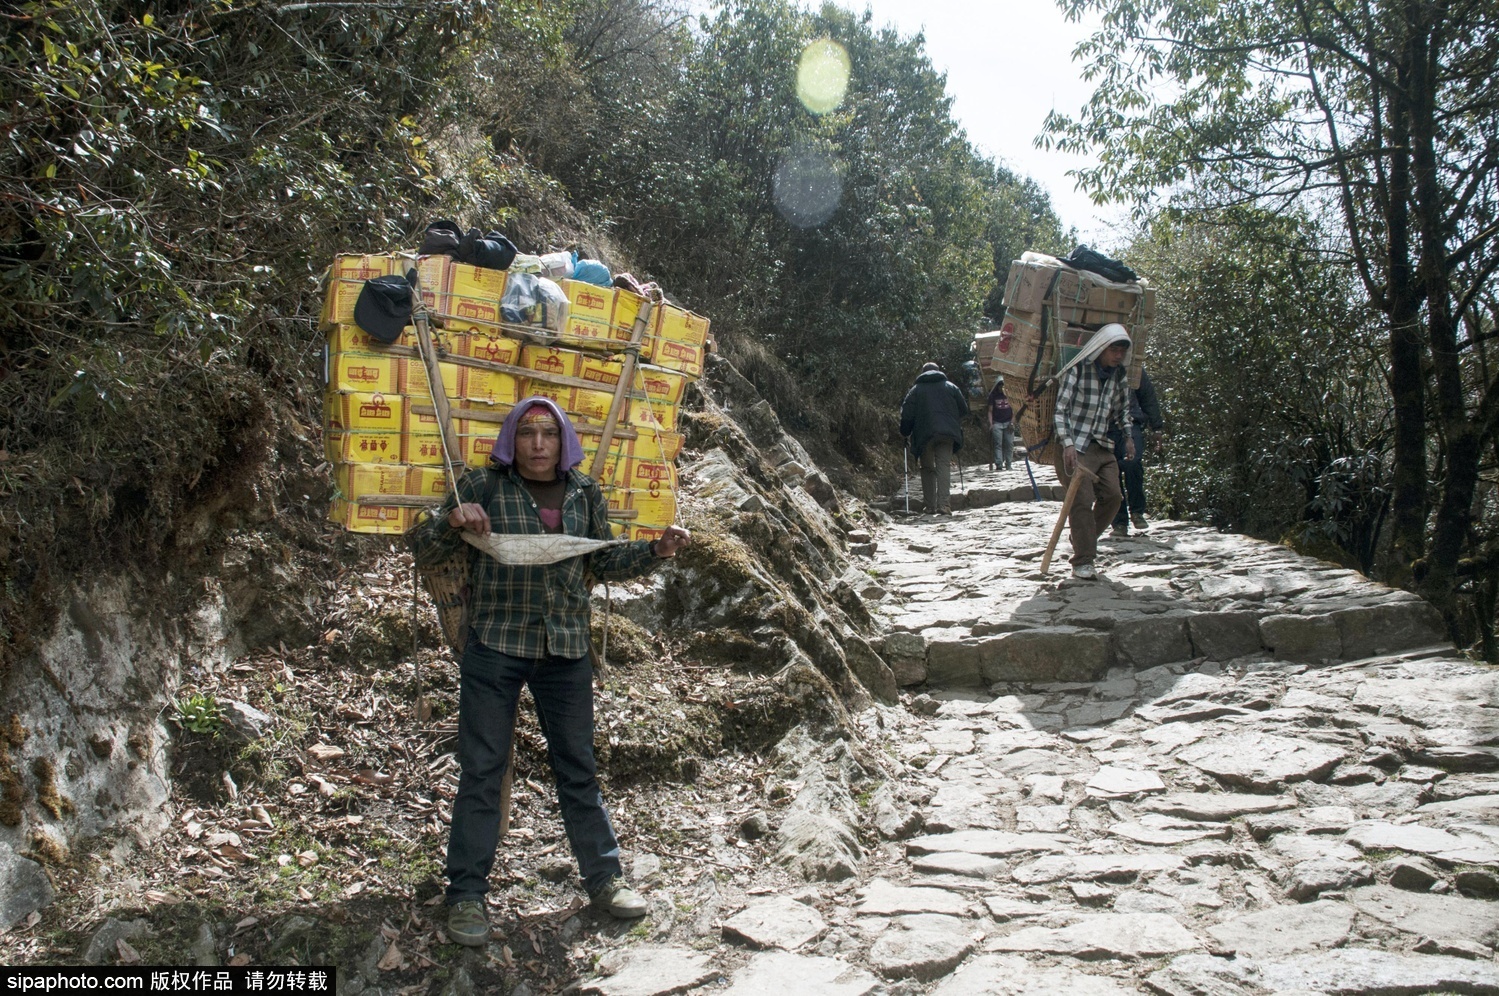 尼泊尔喜马拉雅山区的搬运工